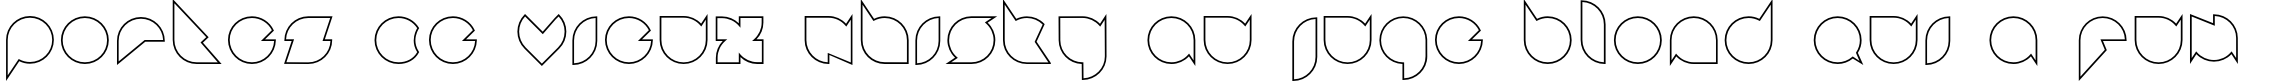 Пример написания шрифтом Badabing Regular текста на французском